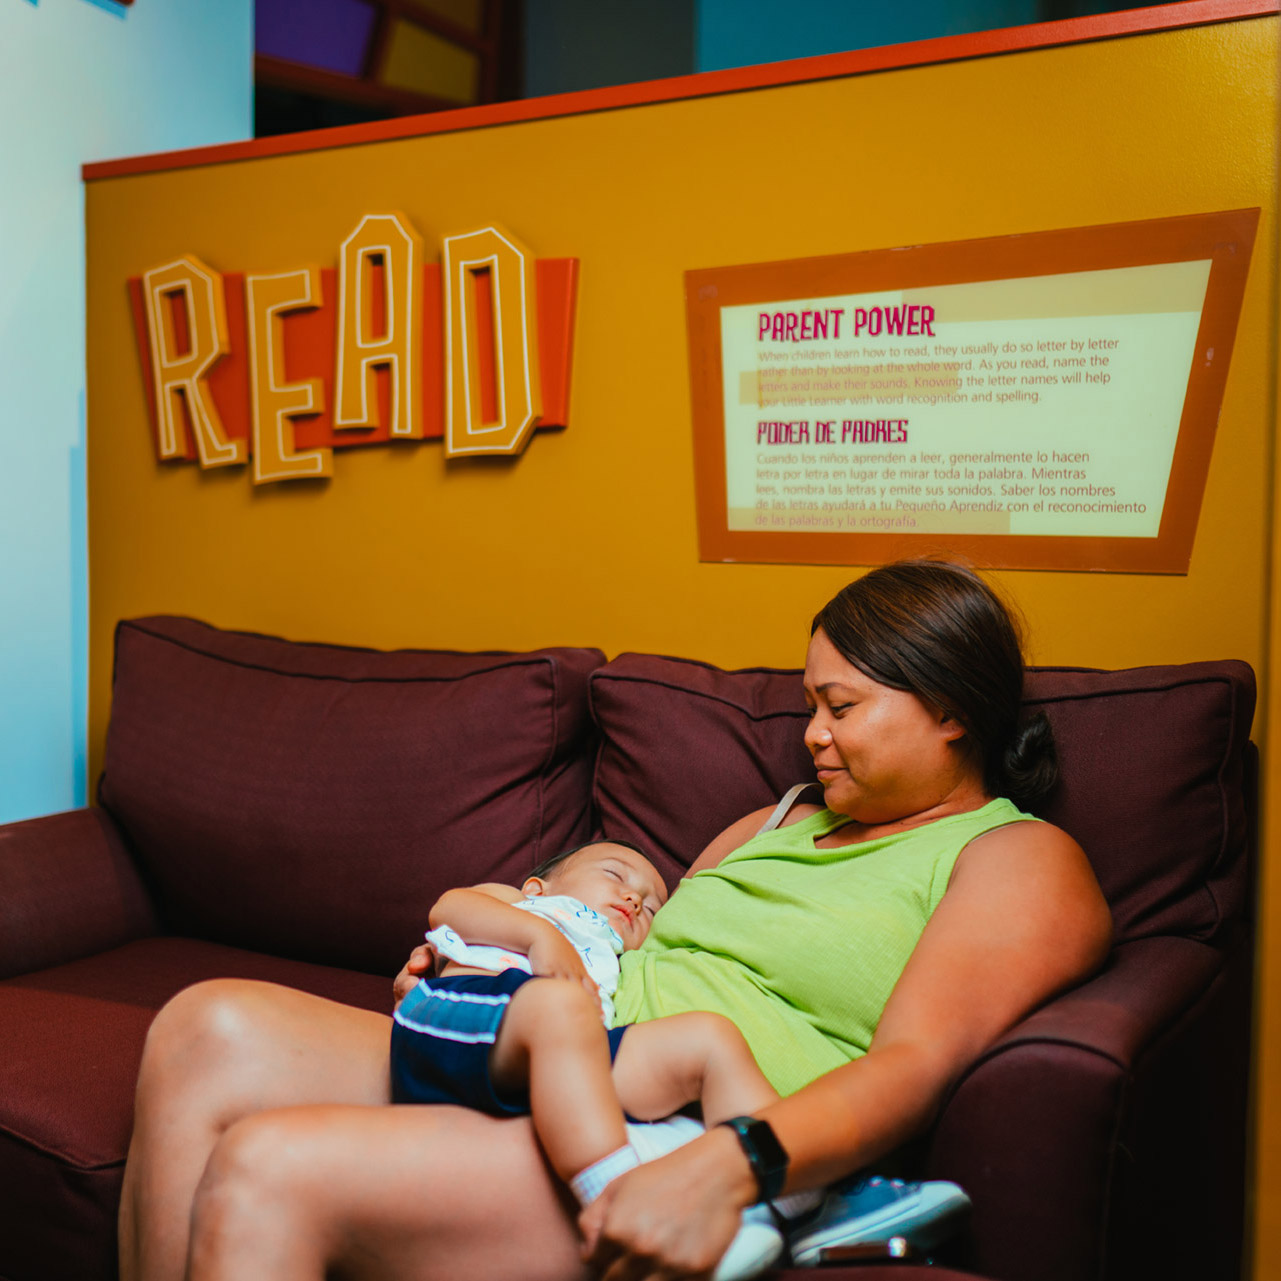 发现者儿童博物馆的 &quot;阅读 &quot;标牌前，一名妇女坐在沙发上，腿上抱着一个熟睡的幼儿。